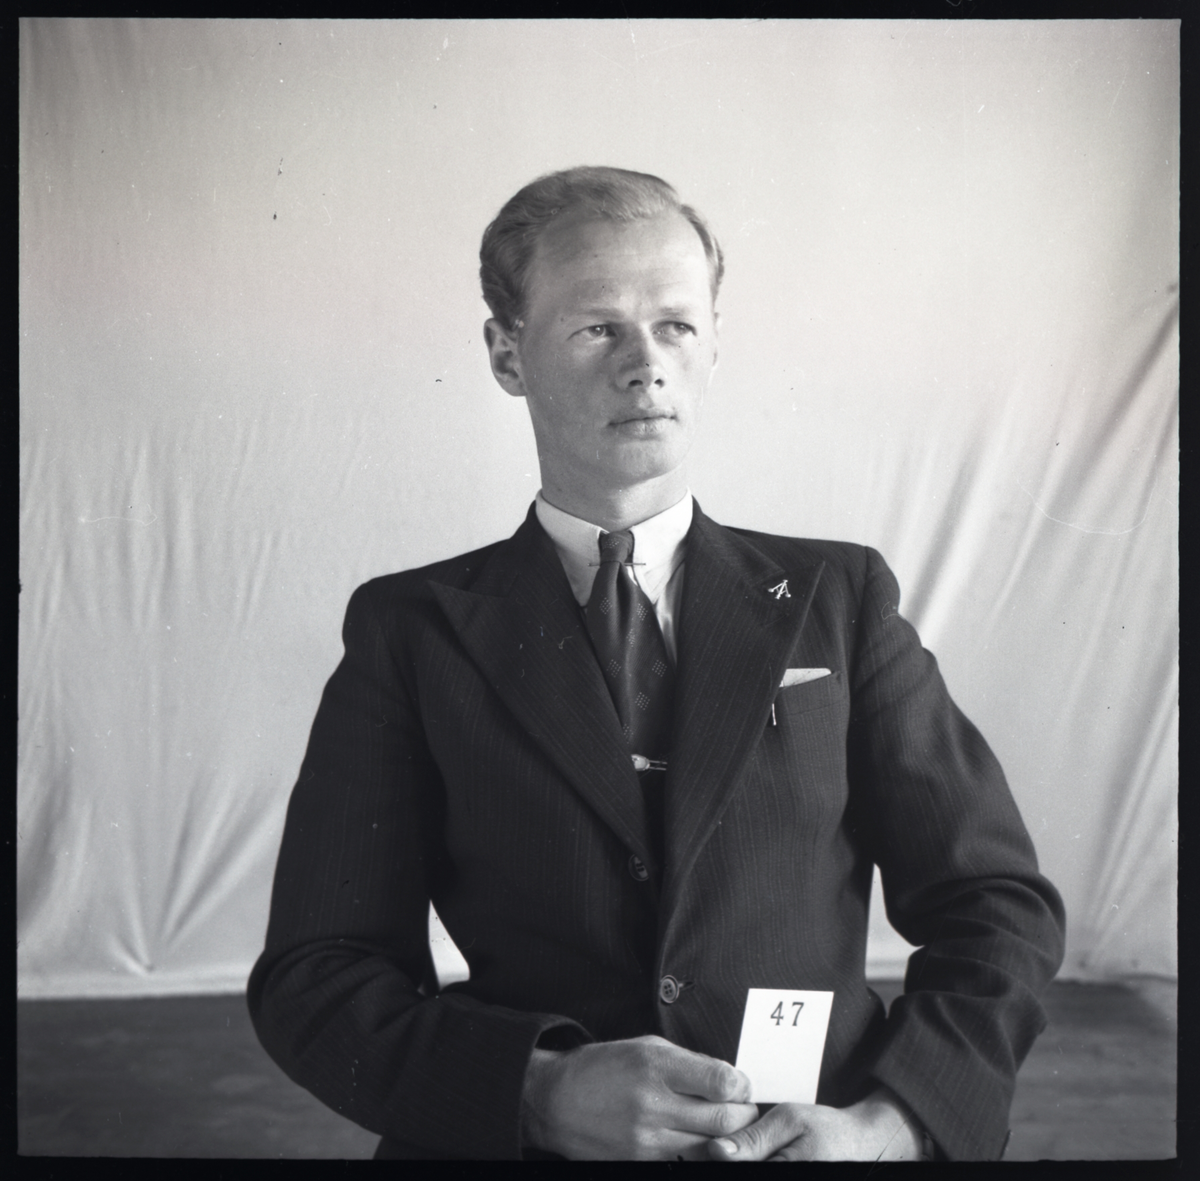 Klassefoto av elev Fredrik Johnsen som gikk på Skiensfjordens tekniske fagskole i Porsgrunn. Han er identifisert basert på skolefoto TGM-B.31977.L7.059

Negativ ble opprinnelig oppbevart i en eske med påskrift: Porsgrunns Tekniker 1942-43.